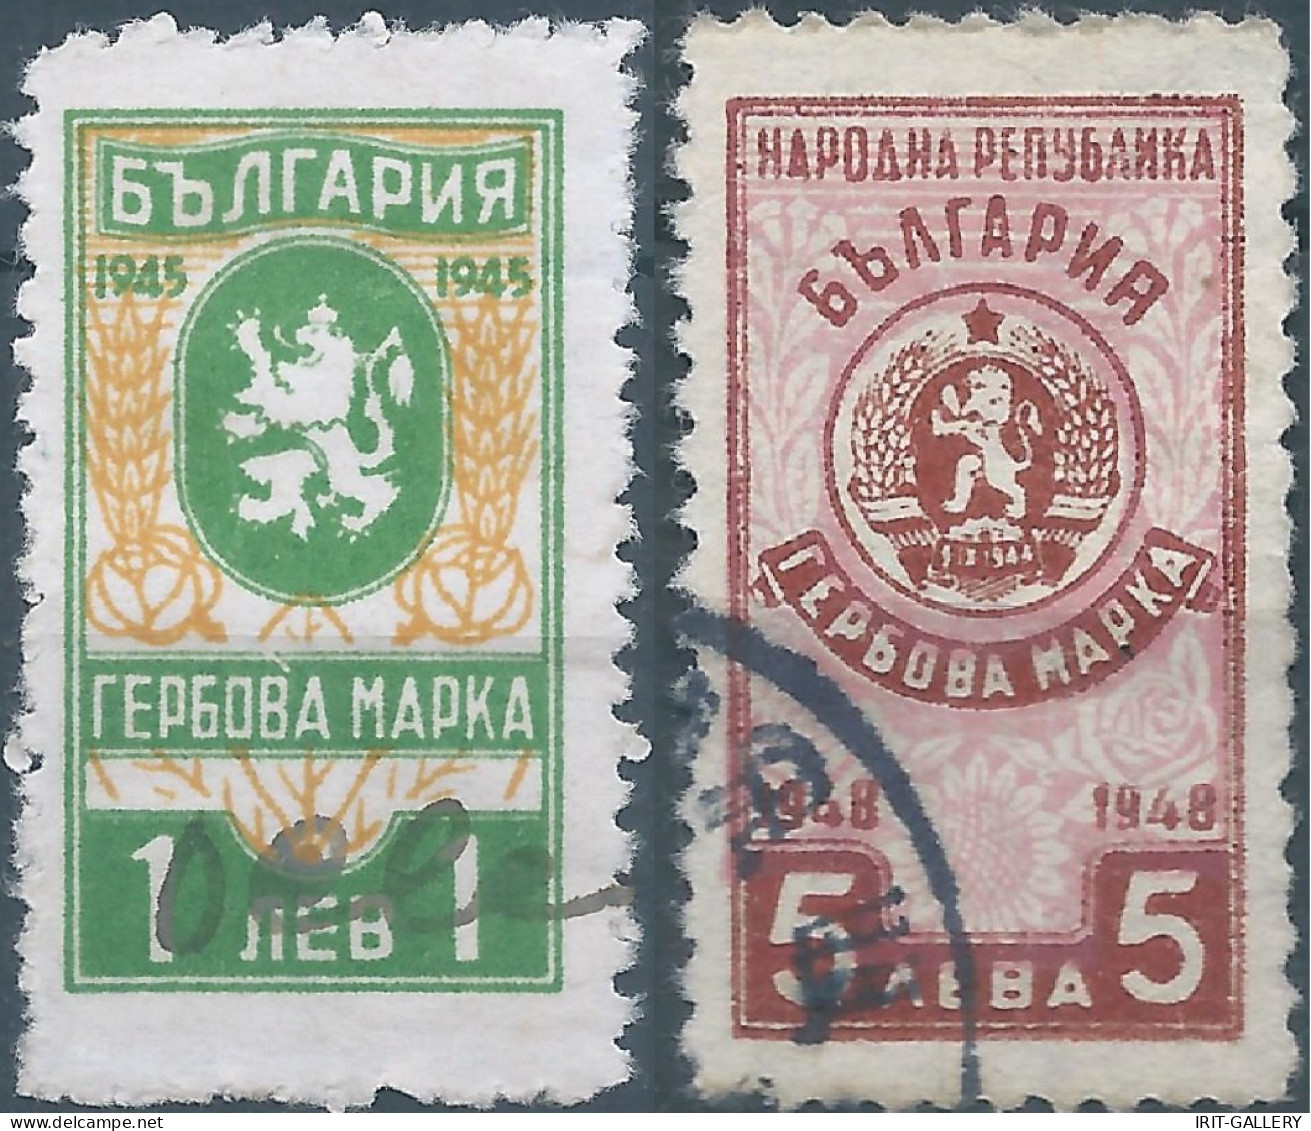 Bulgaria - Bulgarien - Bulgare,1945 - 1948 Revenue Stamps Fiscal Tax,Obliterated - Francobolli Di Servizio